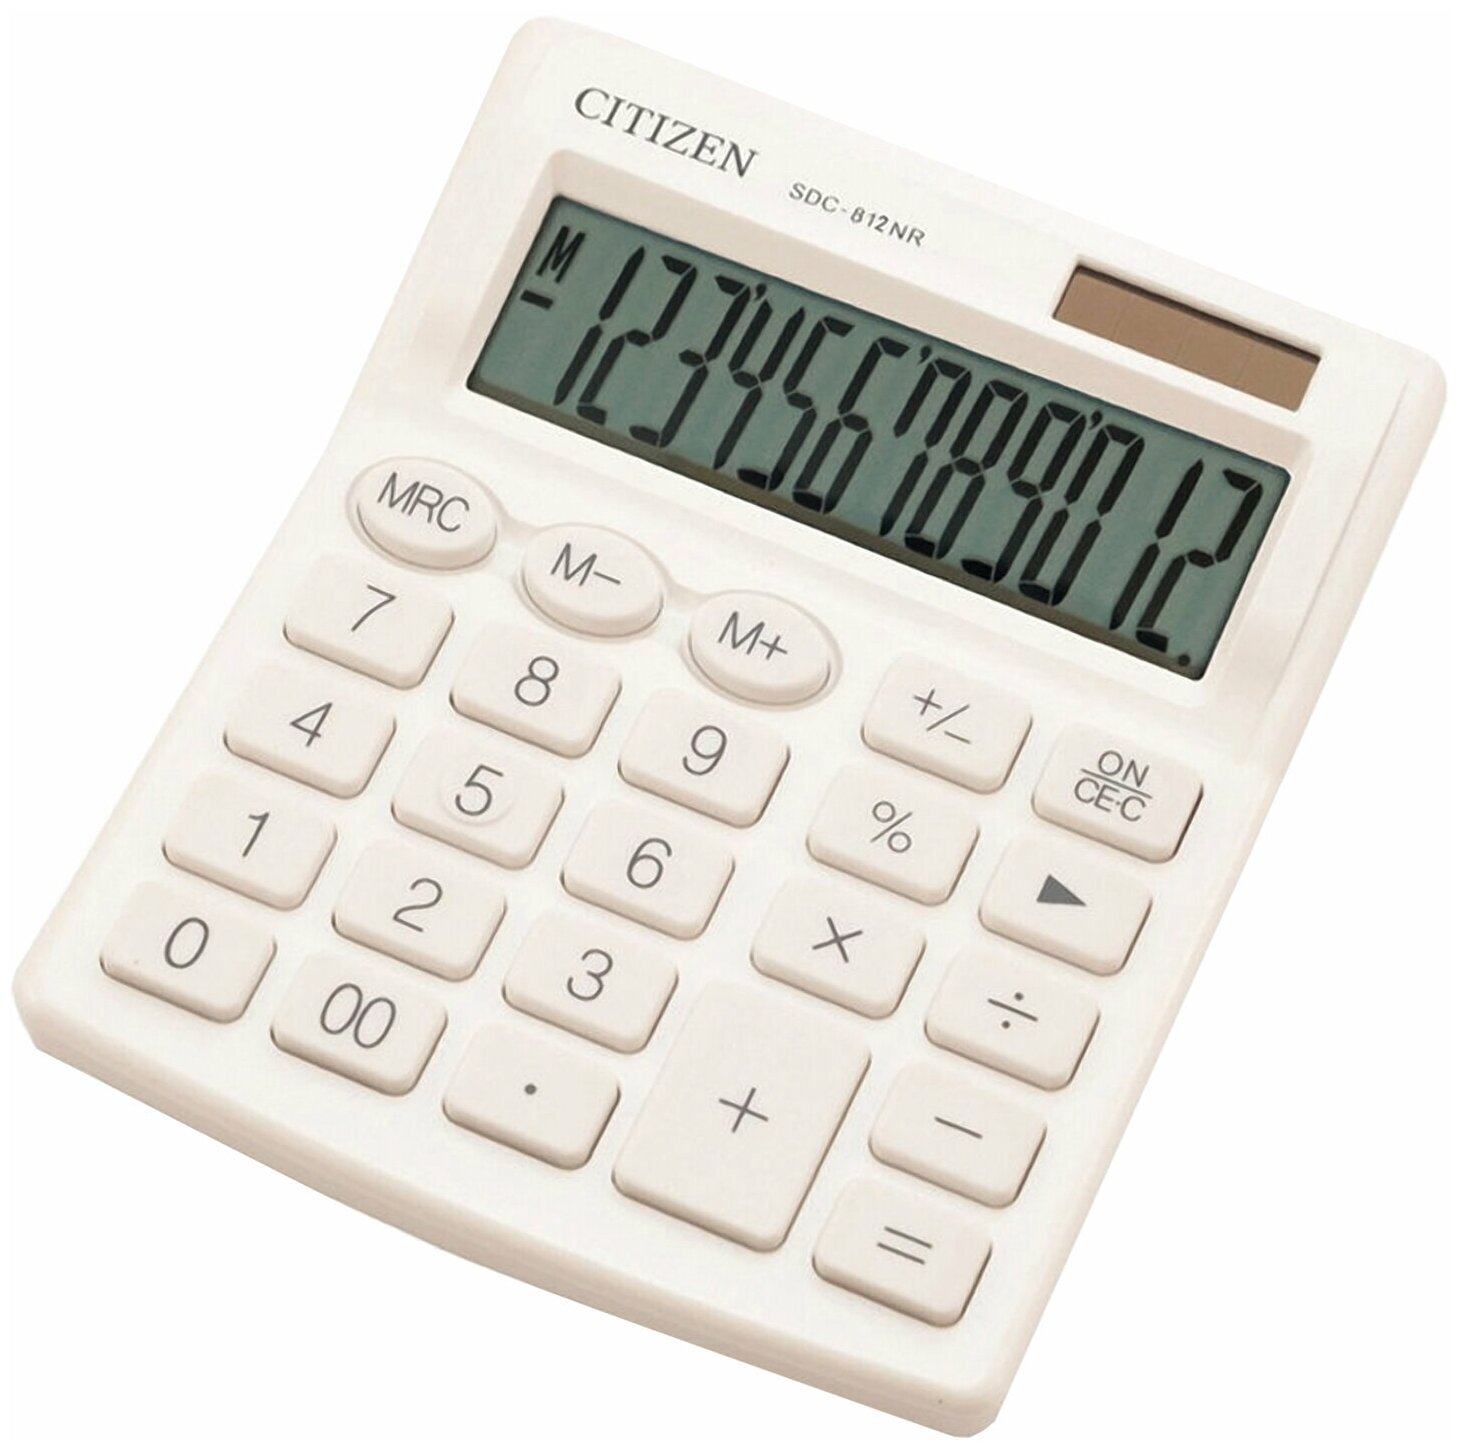 Калькулятор настольный CITIZEN SDC-812NRWHE компактный (124×102 мм) 12 разрядов двойное питание белый